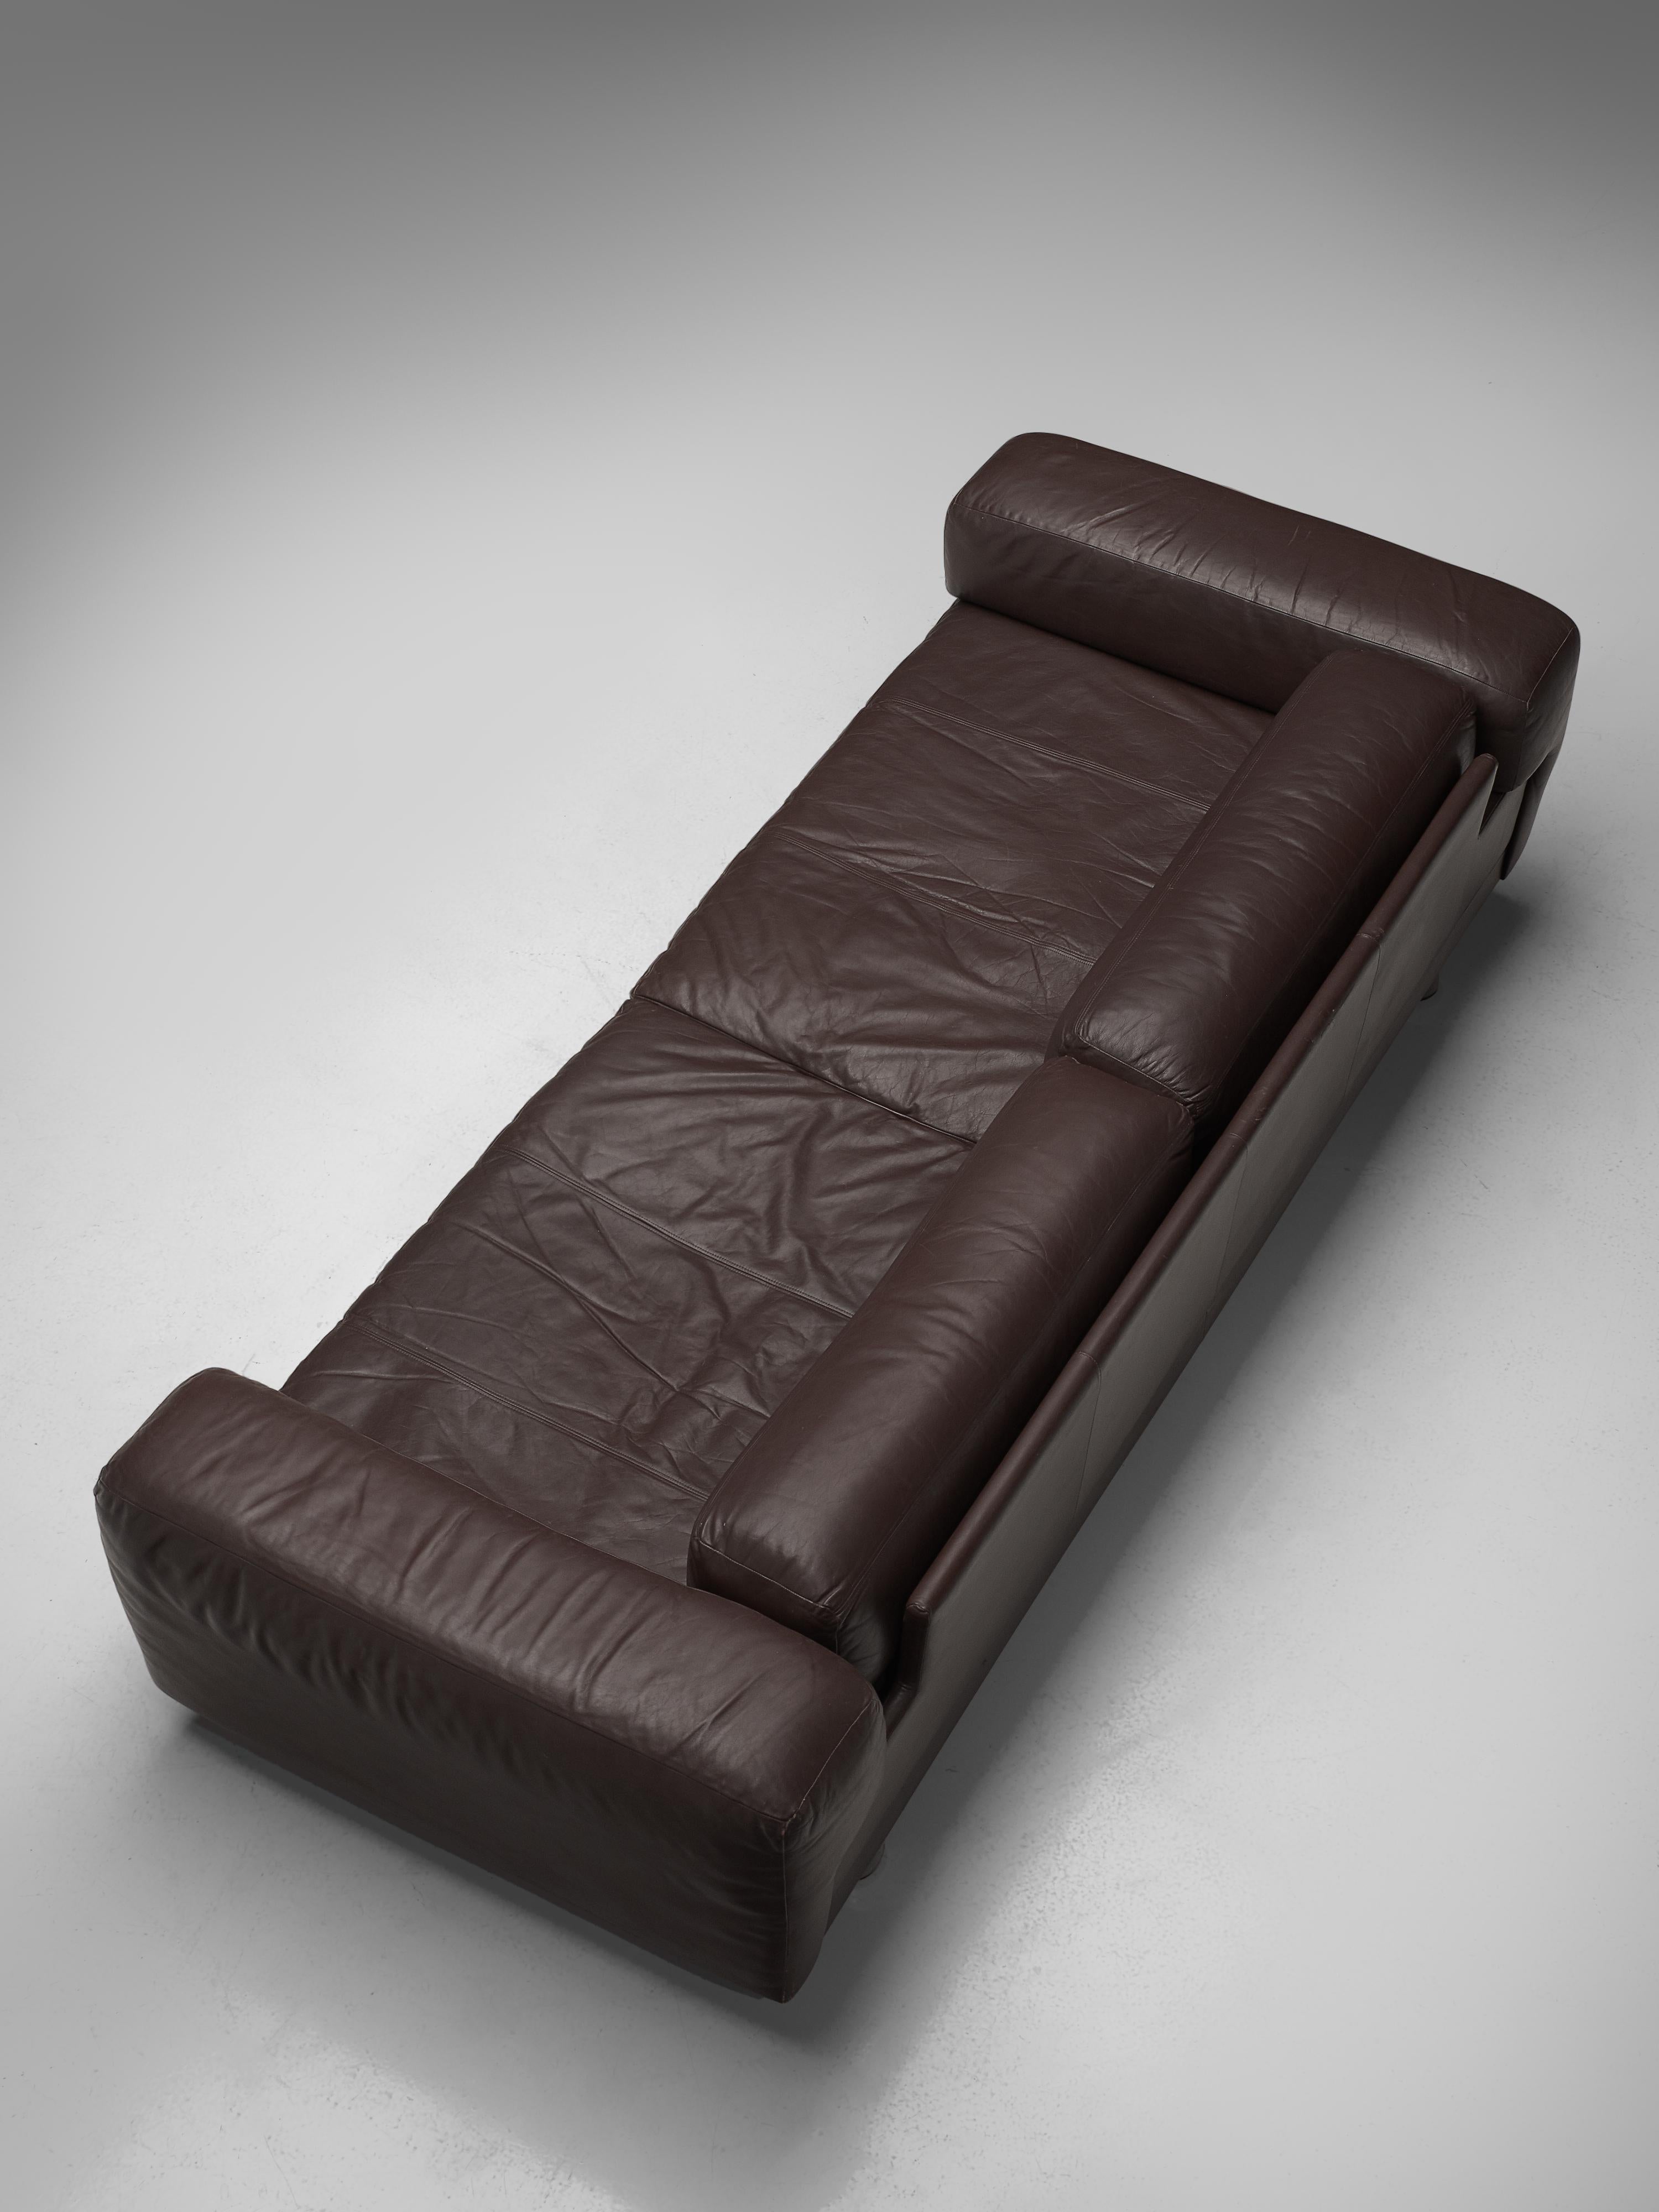 Howard Keith ‘Diplomat’ Sofa in Dark Brown Leather 3